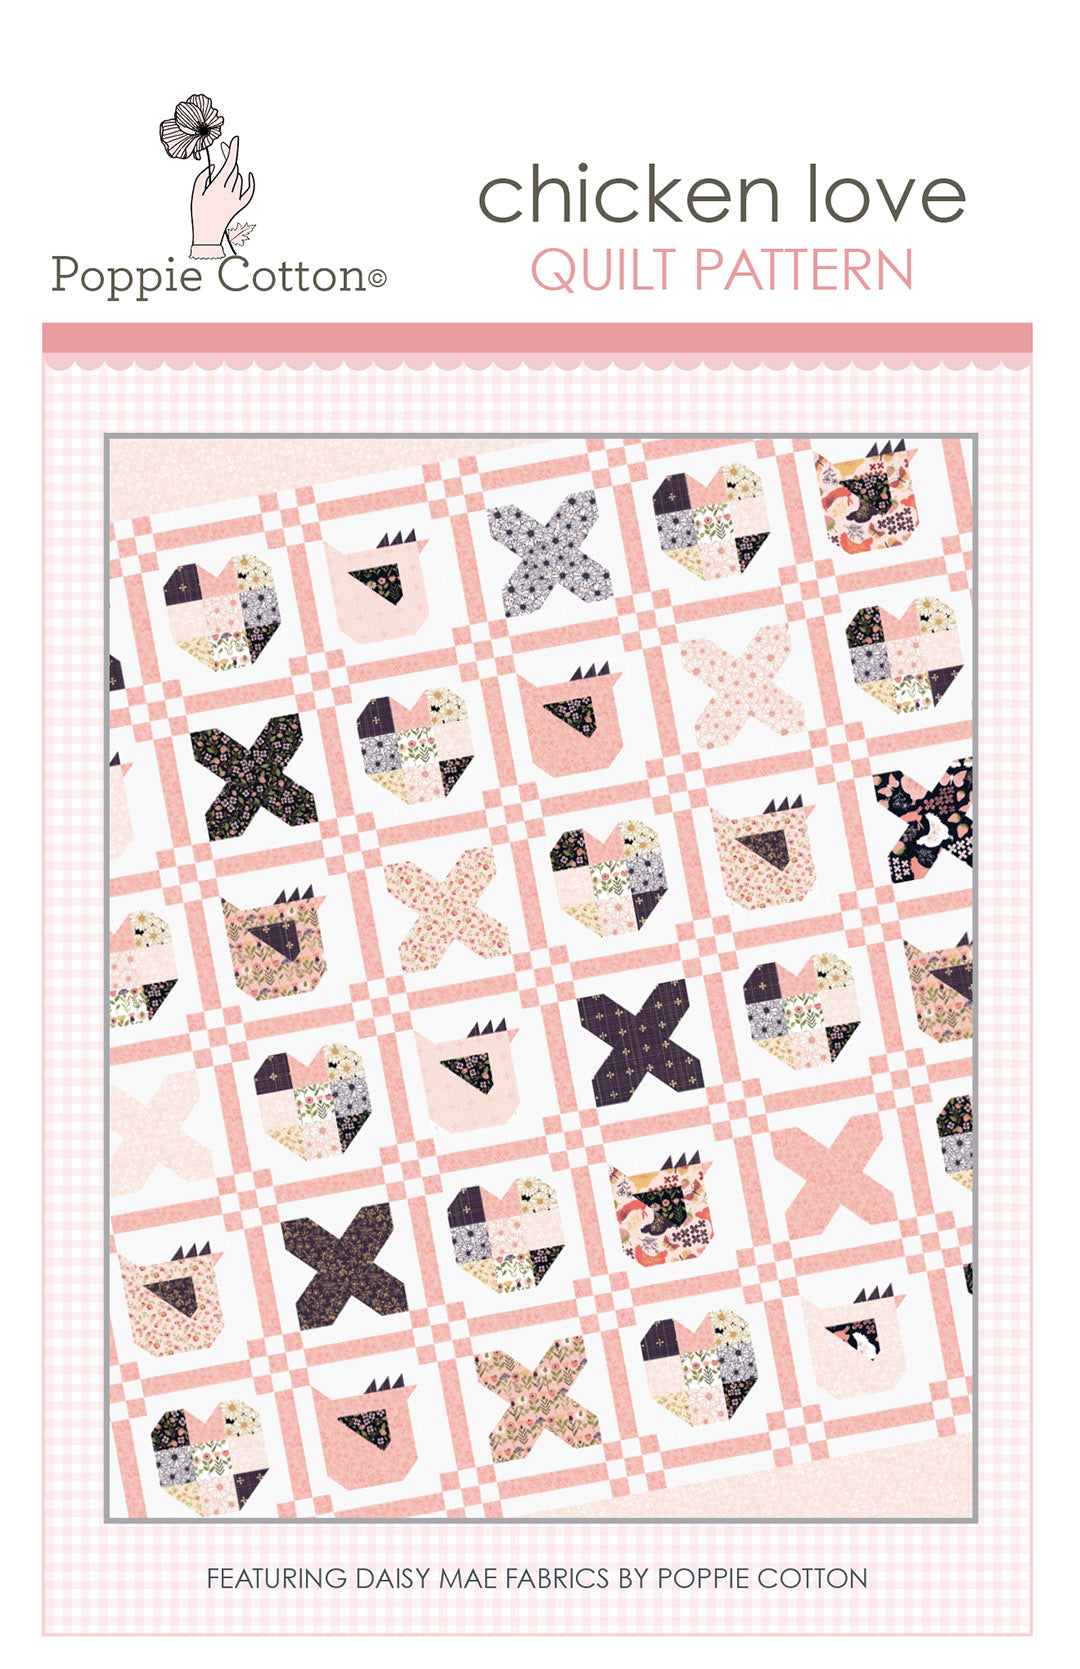 Chicken Love Quilt Pattern by Poppie Cotton Fabrics